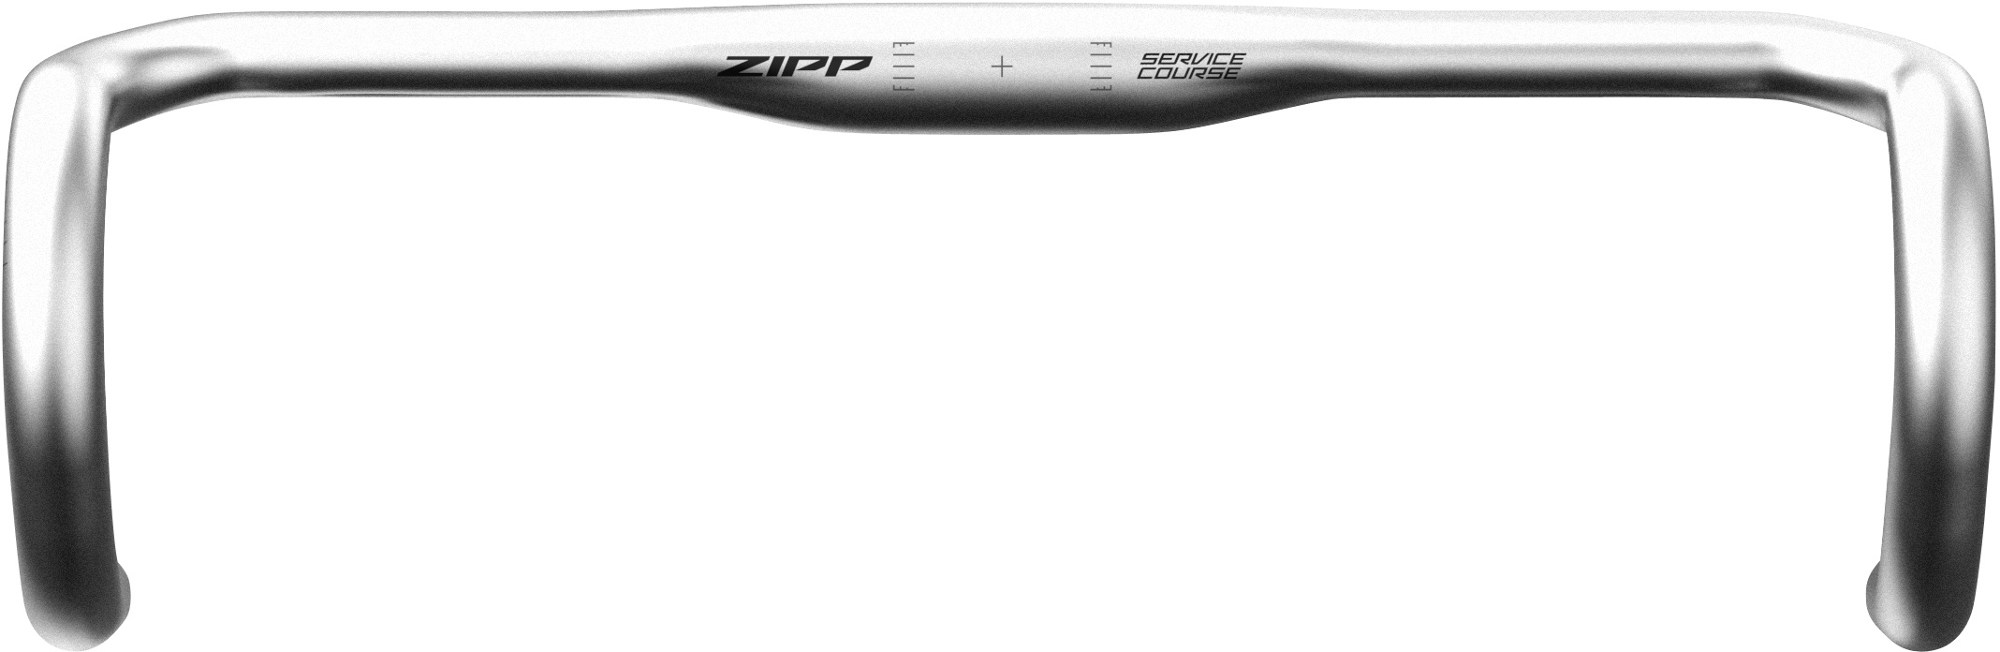 Курс обслуживания 70 Руль Ergo Drop Zipp, серый